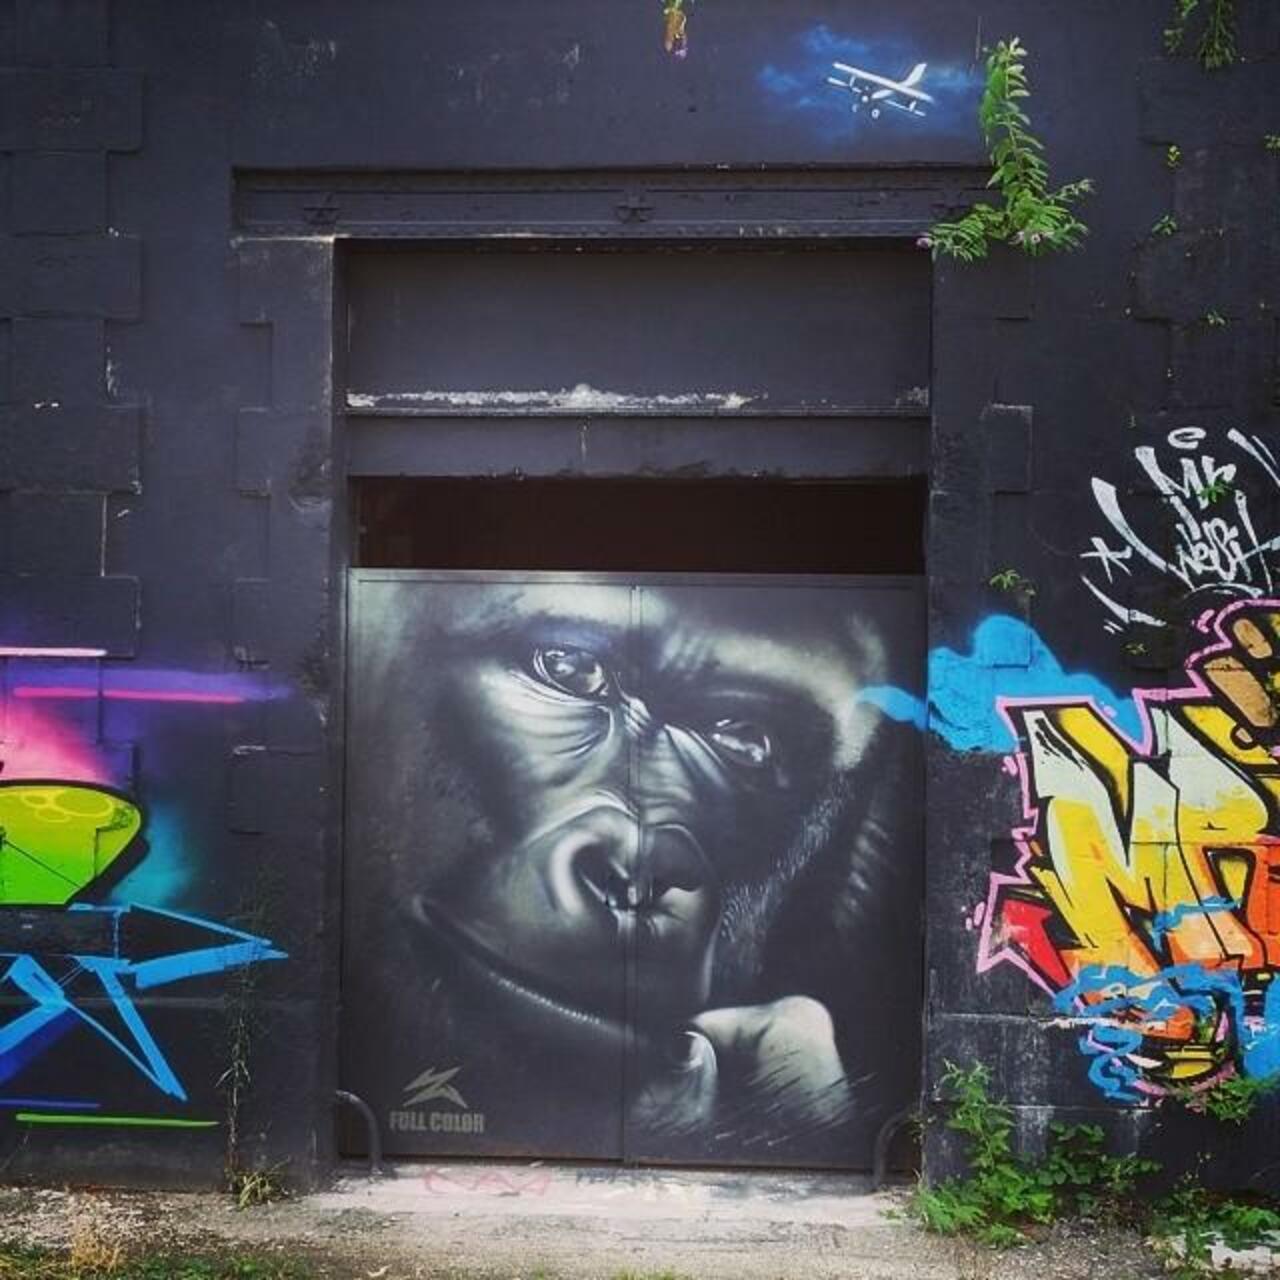 http://bit.ly/1v3KwNw "#urbanart #streetart #graffiti #portrait #france #rue #art #graffitis  #photodujour # b... http://t.co/DnMCqvl6Br